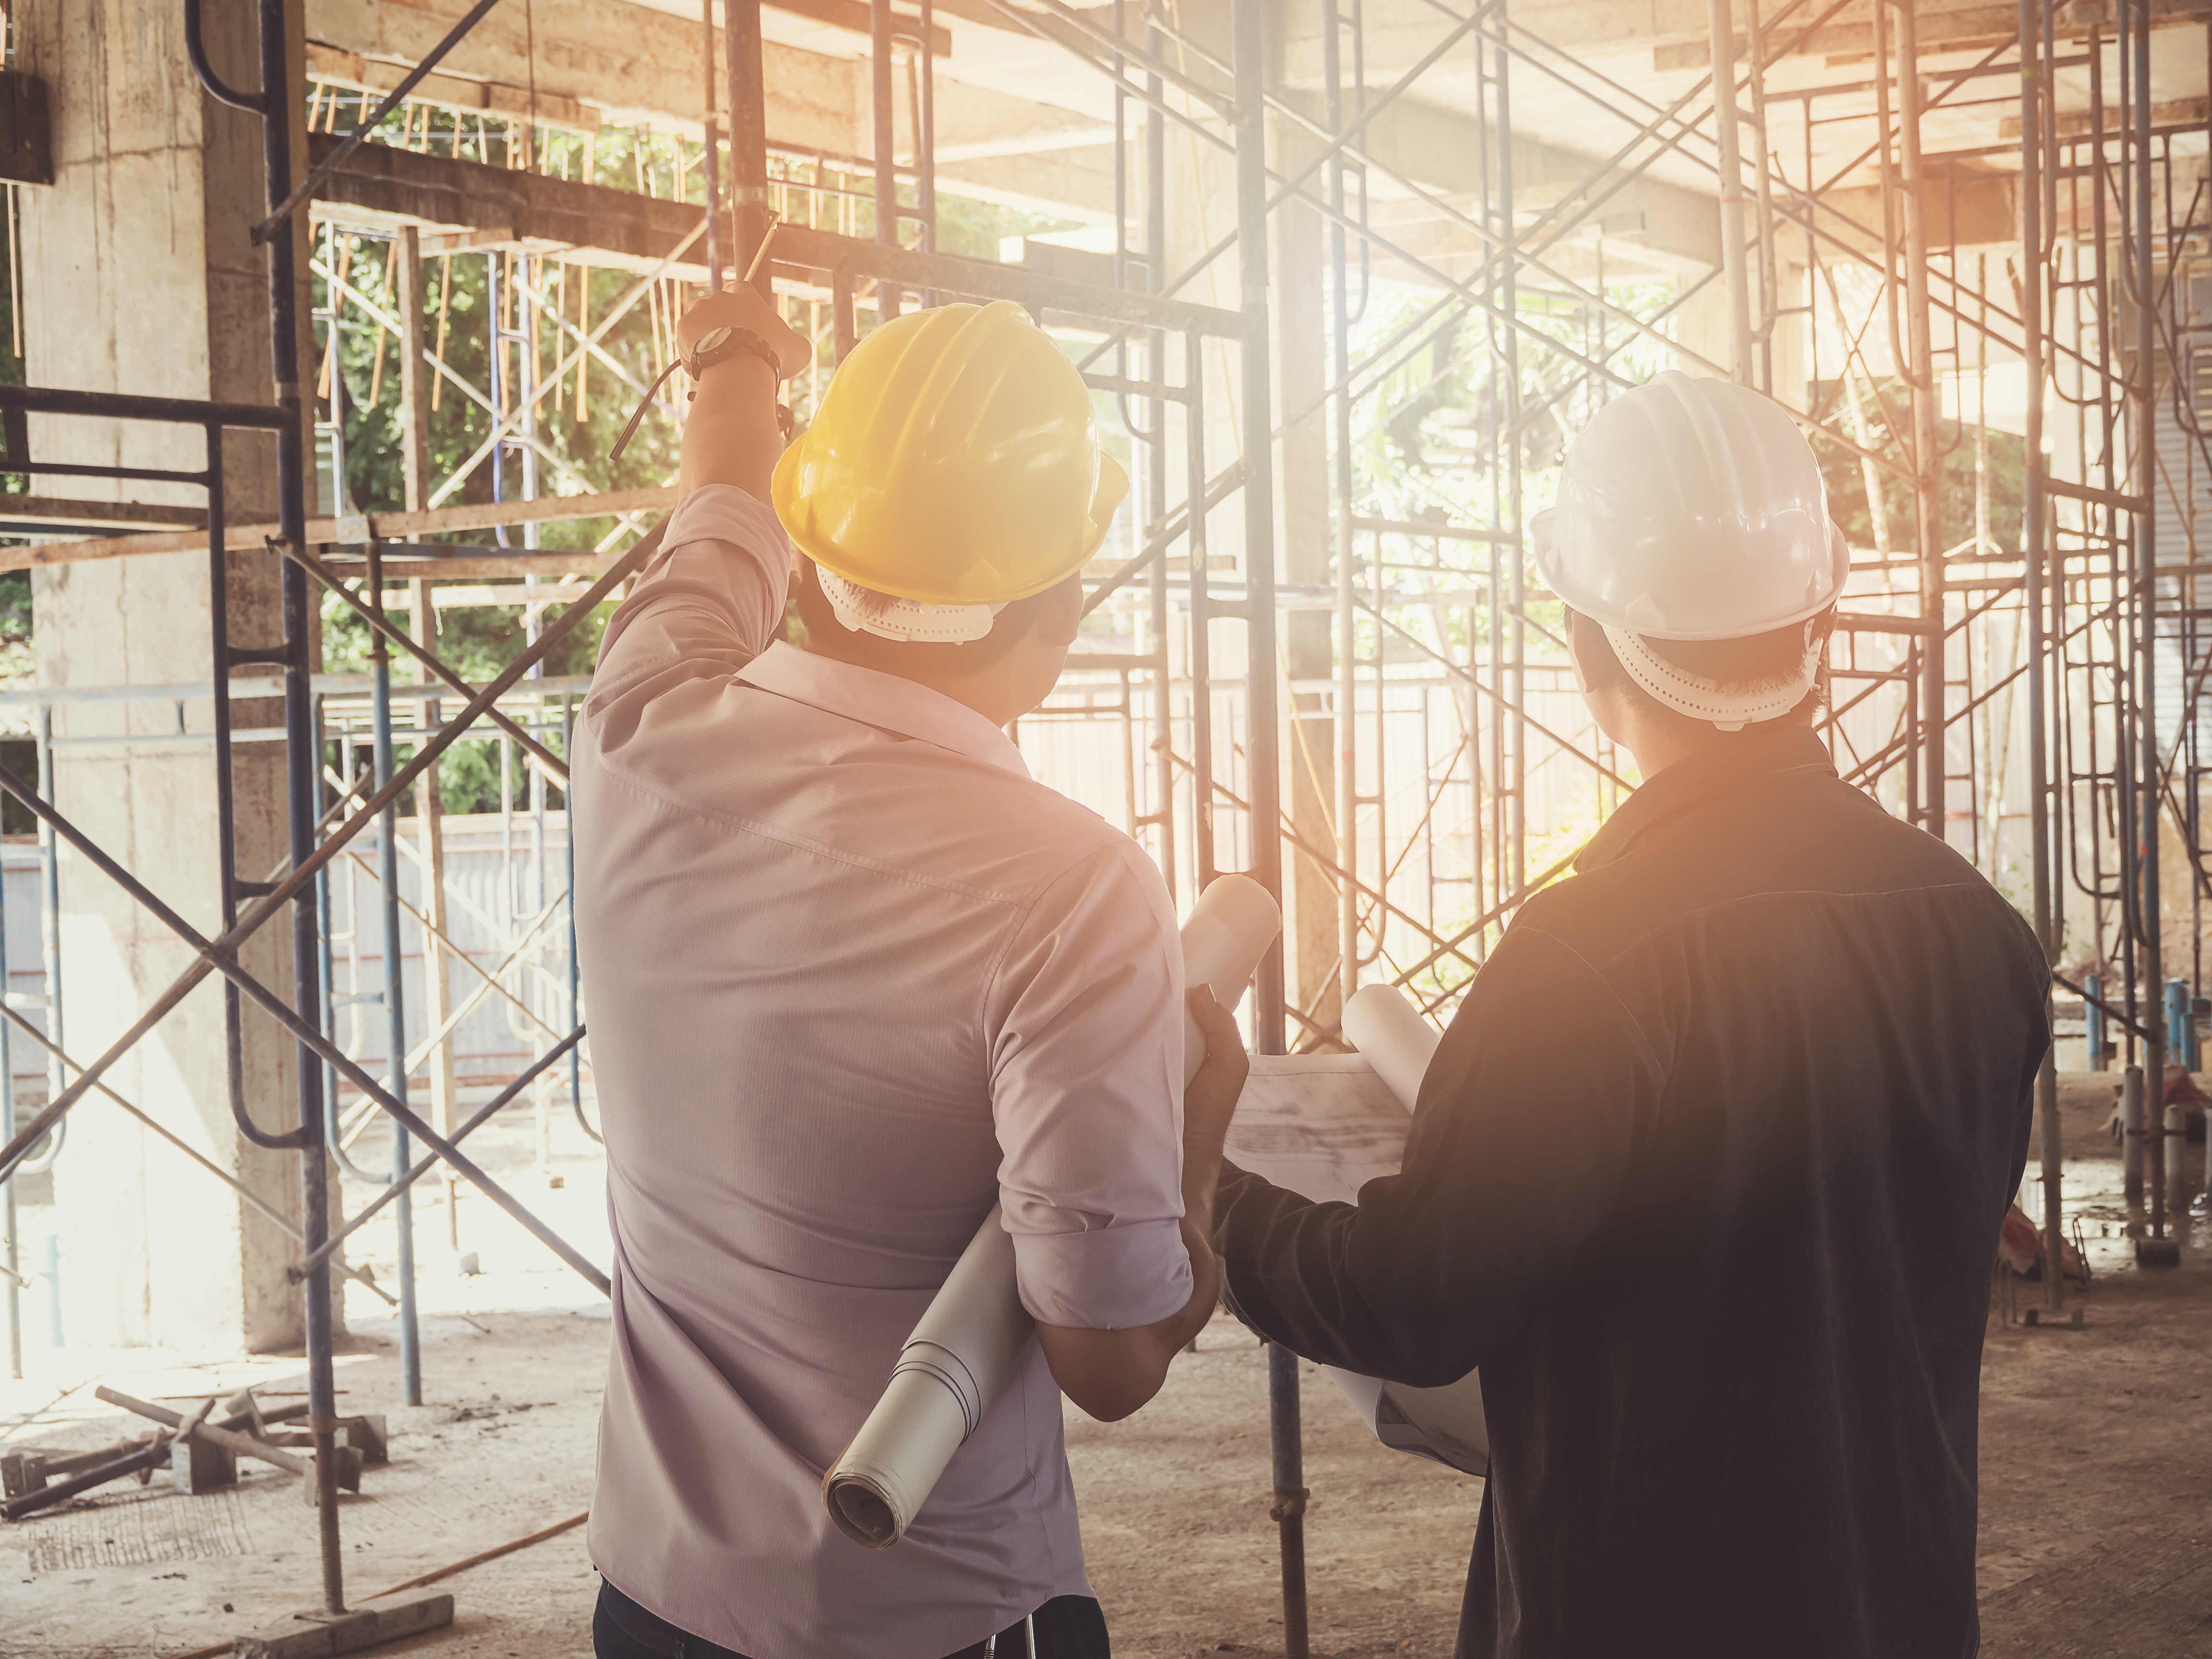 Bâtiments industriels : quelles sont les normes réglementaires pour la conception et l'aménagement des locaux de travail ?